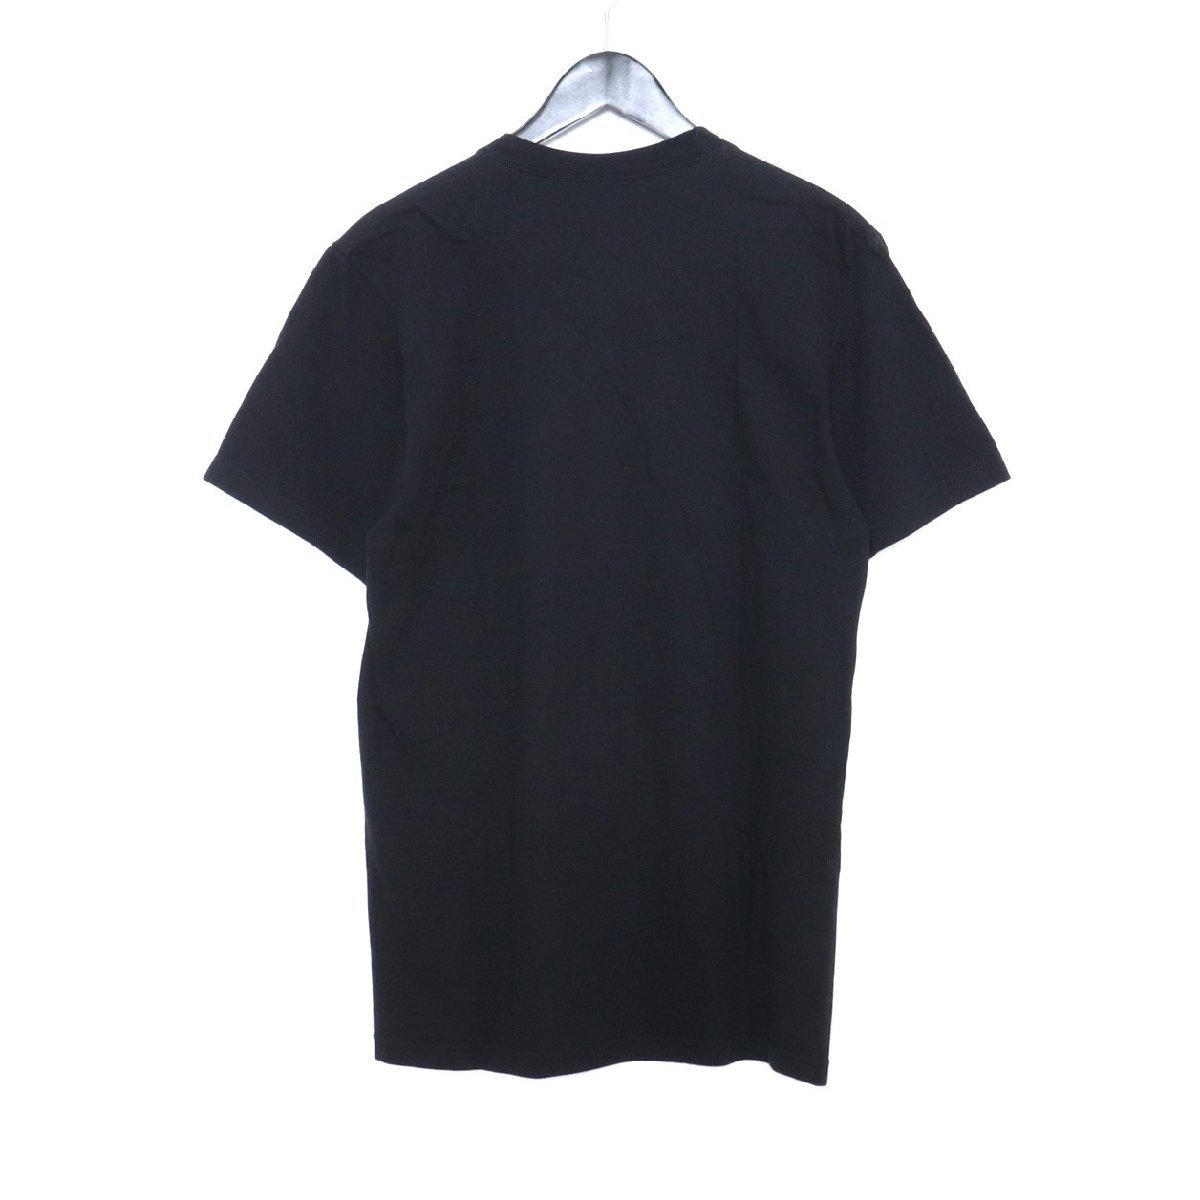 シュプリーム Supreme 2017SS Sade Tee Mサイズ ブラック シャーデーフォトプリント半袖Tシャツ カットソー photo_画像2